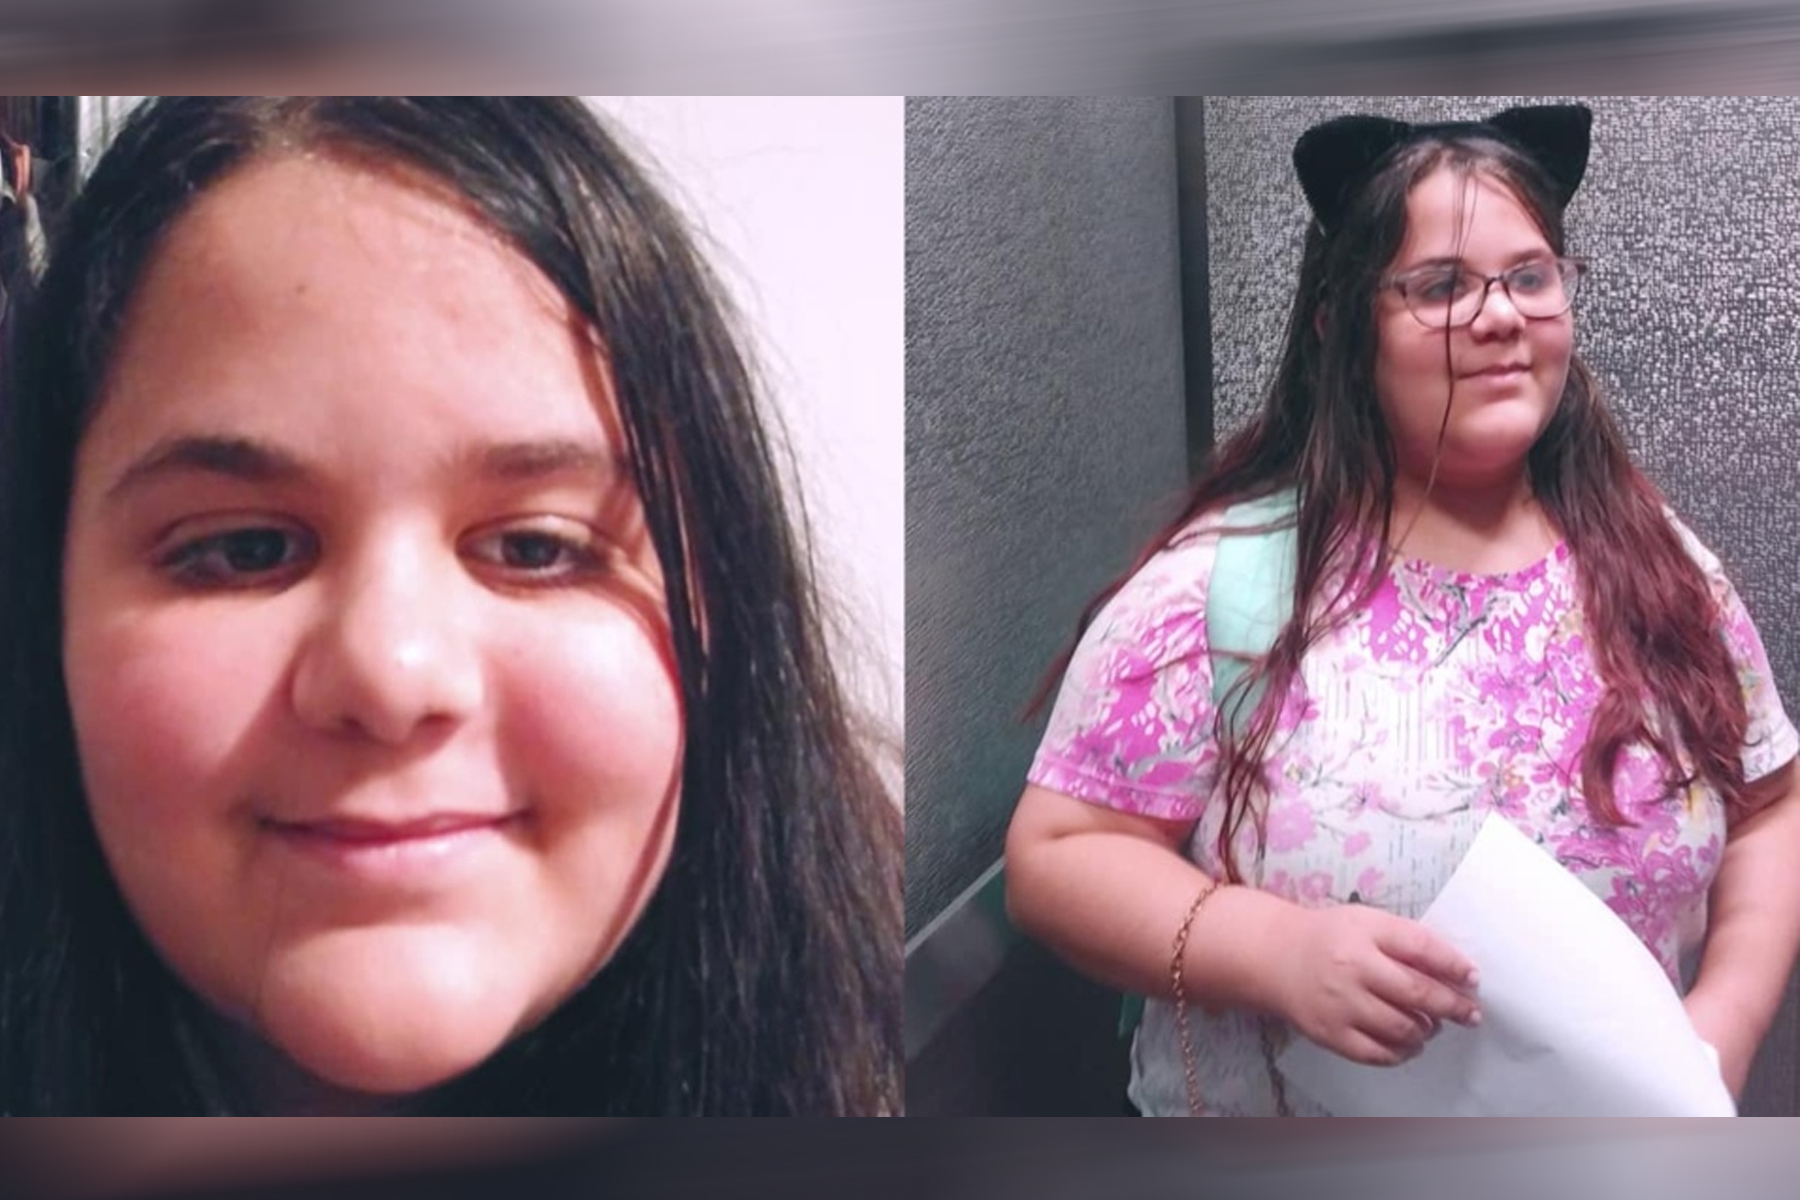 دختر 13 ساله ای از برمپتون انتاریو در اثر ابتلا به کووید-19 درگذشت